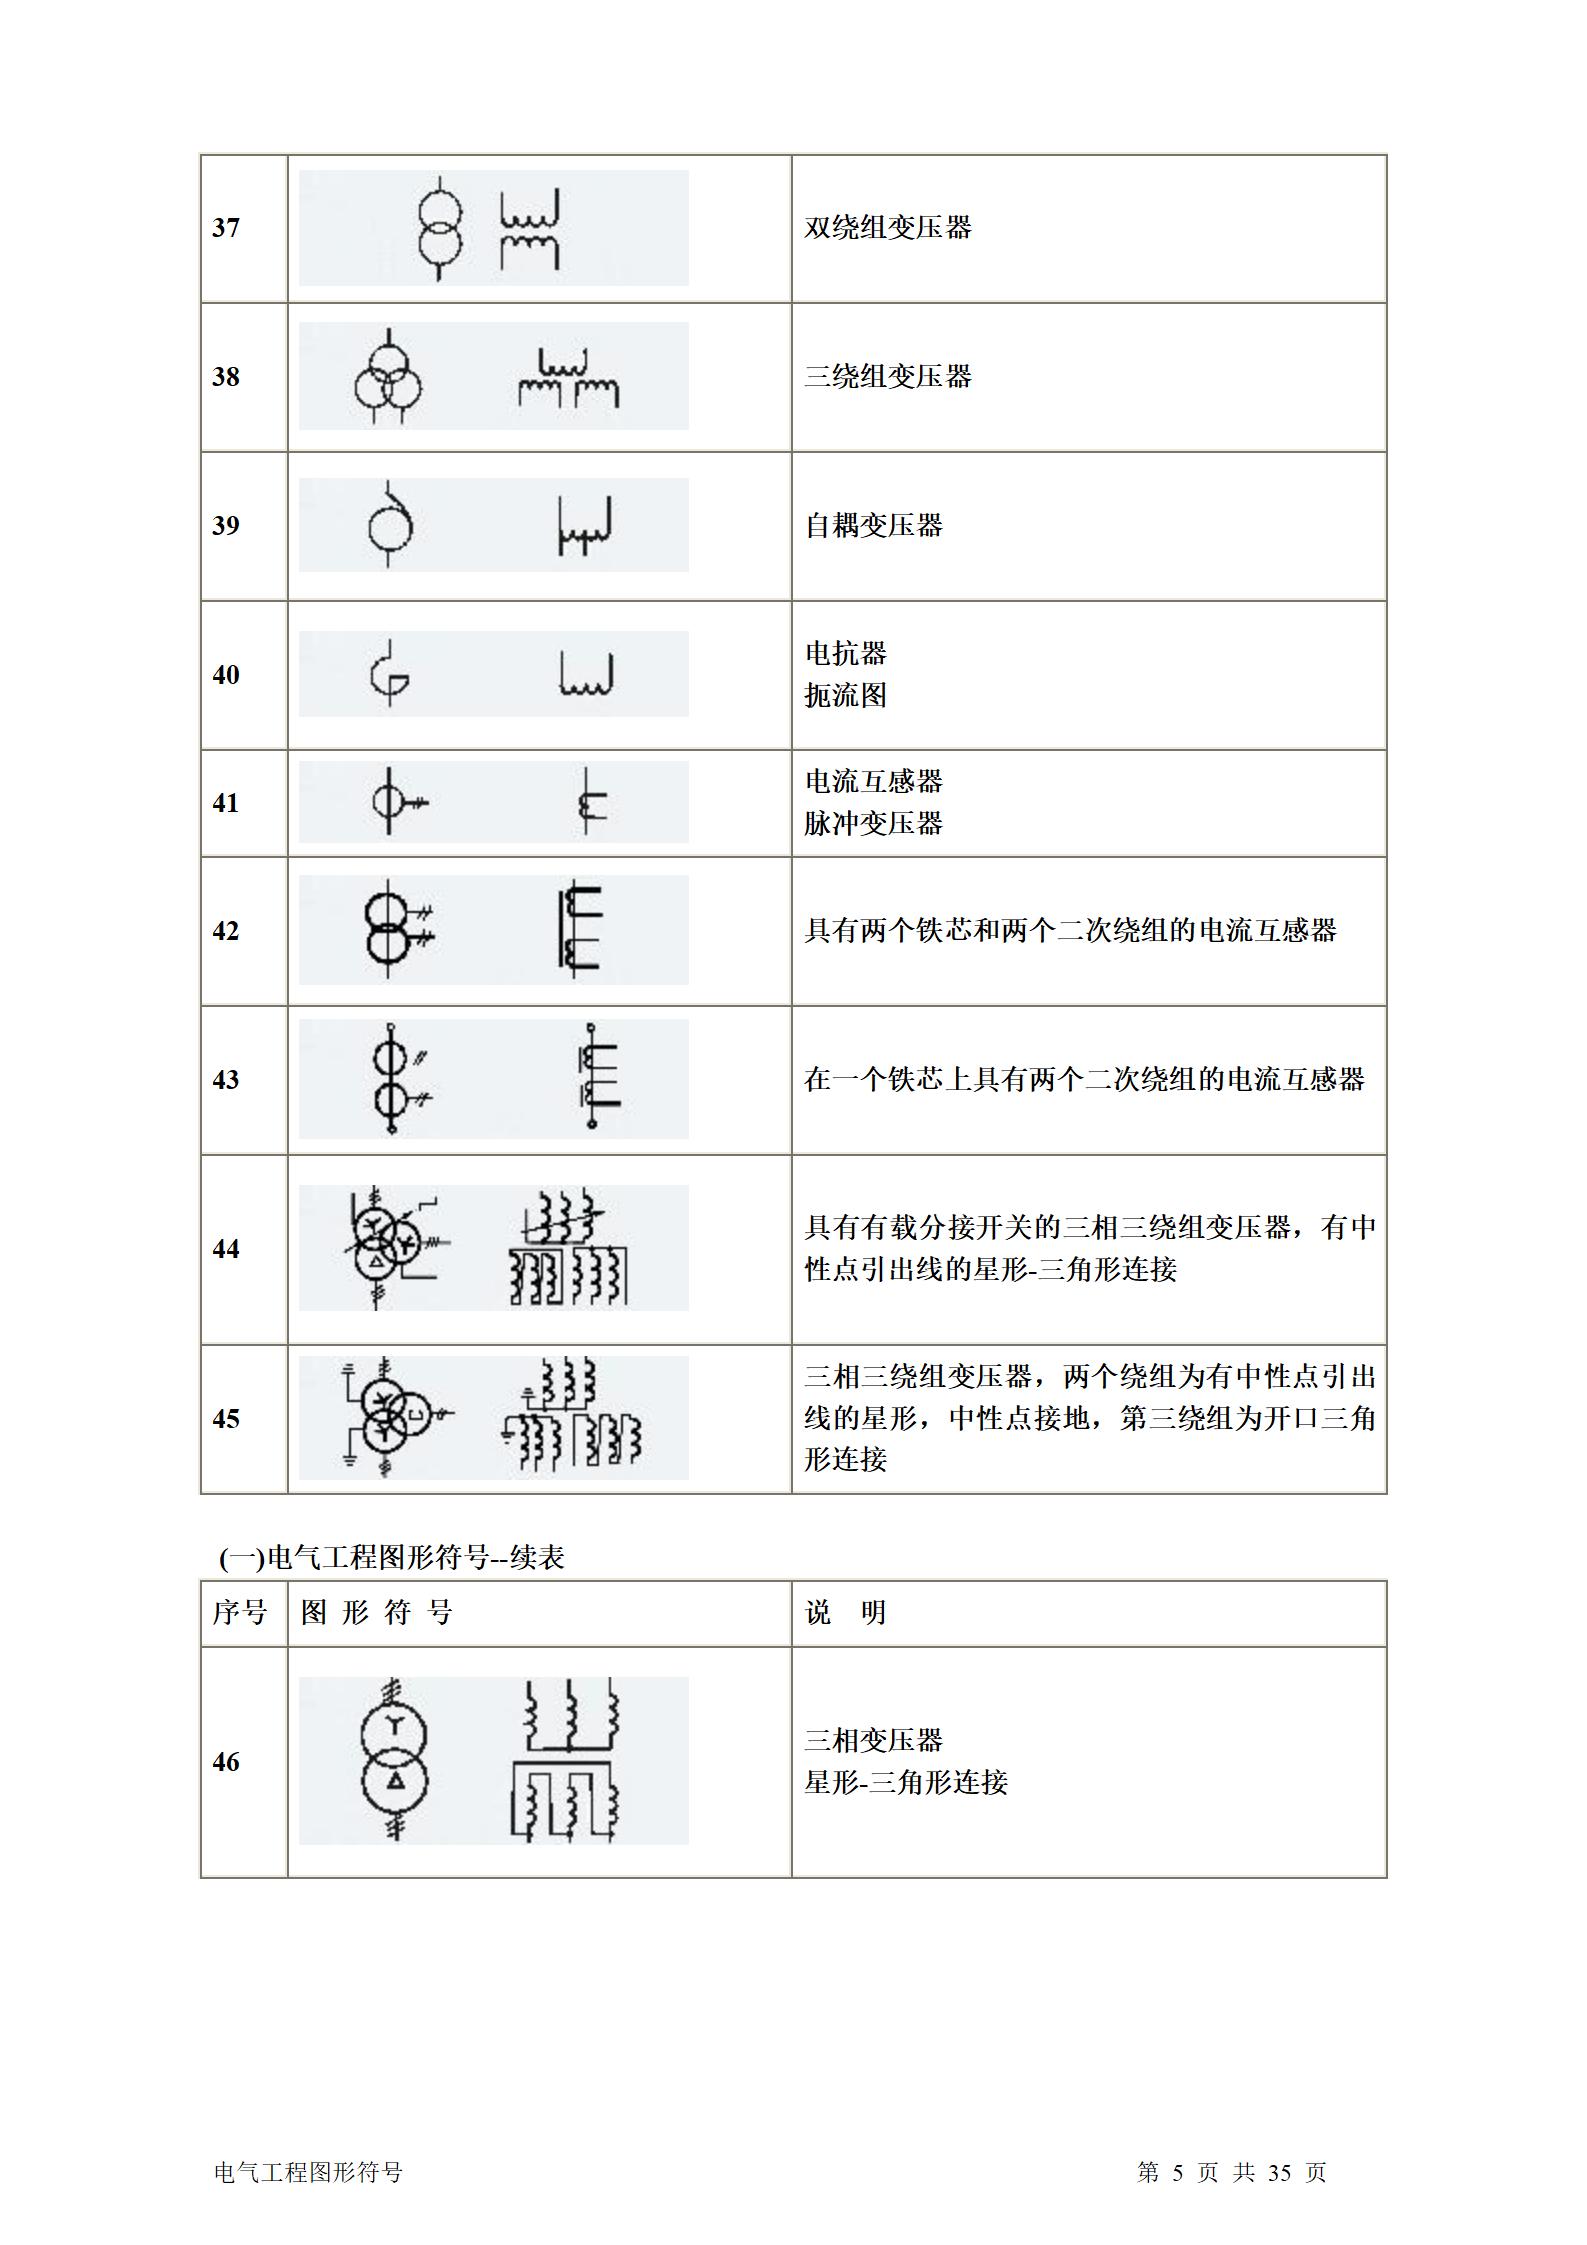 建筑电气、水暖、通风工程图形符号大全word版插图(5)